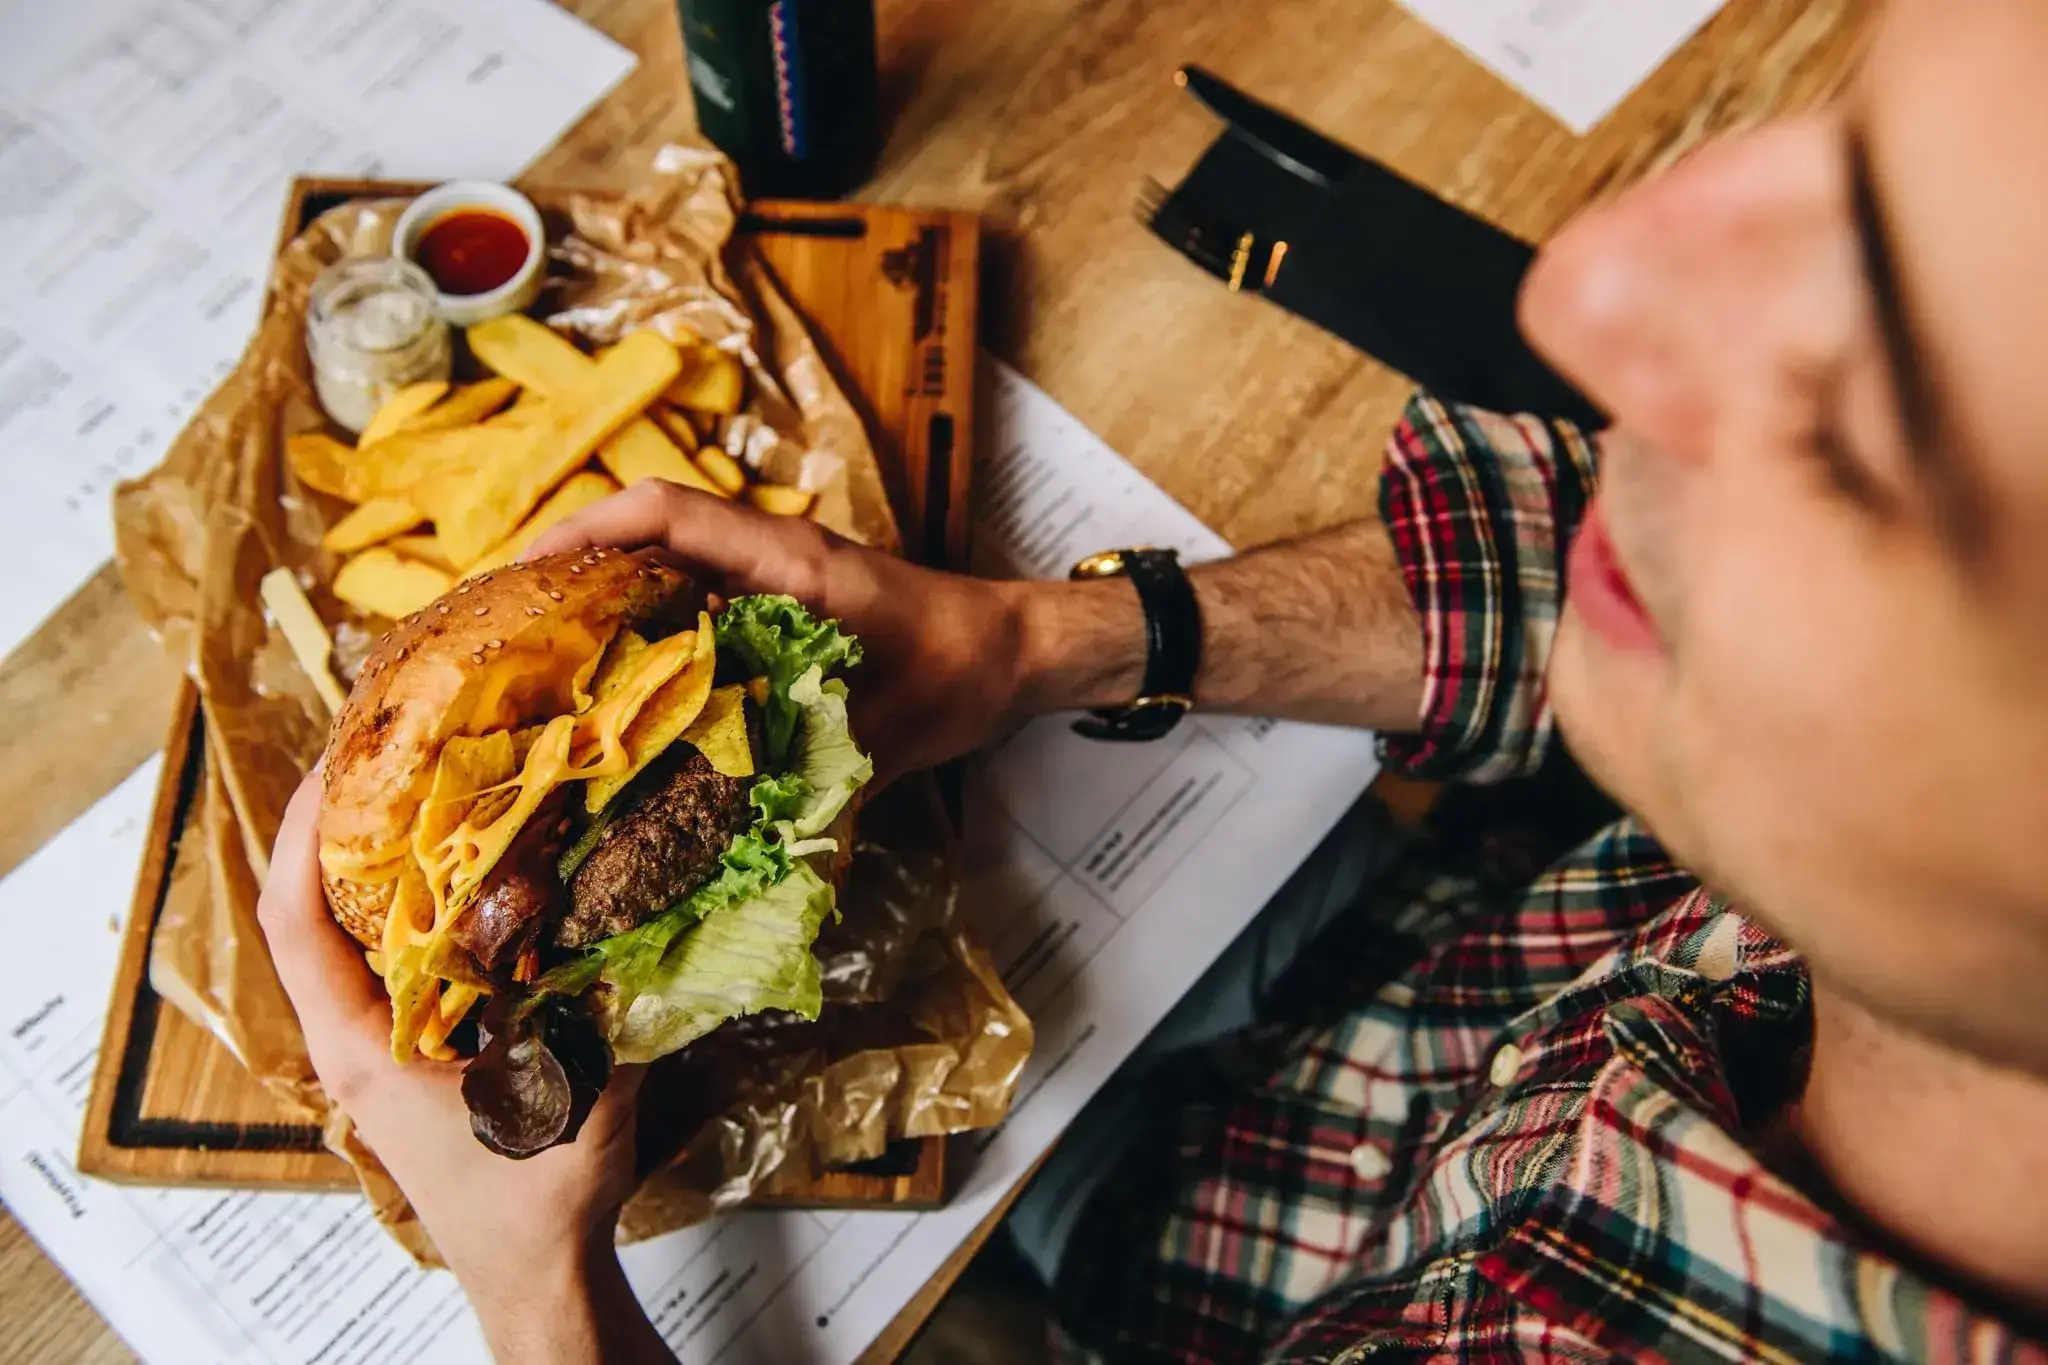 Mężczyzna trzyma w obu rękach hamburgera, którego zaraz będzie jadł. Trzyma go nad drewnianą deską, na której znajduje się papier do pieczenia, a na nim frytki belgijskie i dwa sosy – w małym słoiczku biały, a w małej białej miseczce czerwony.